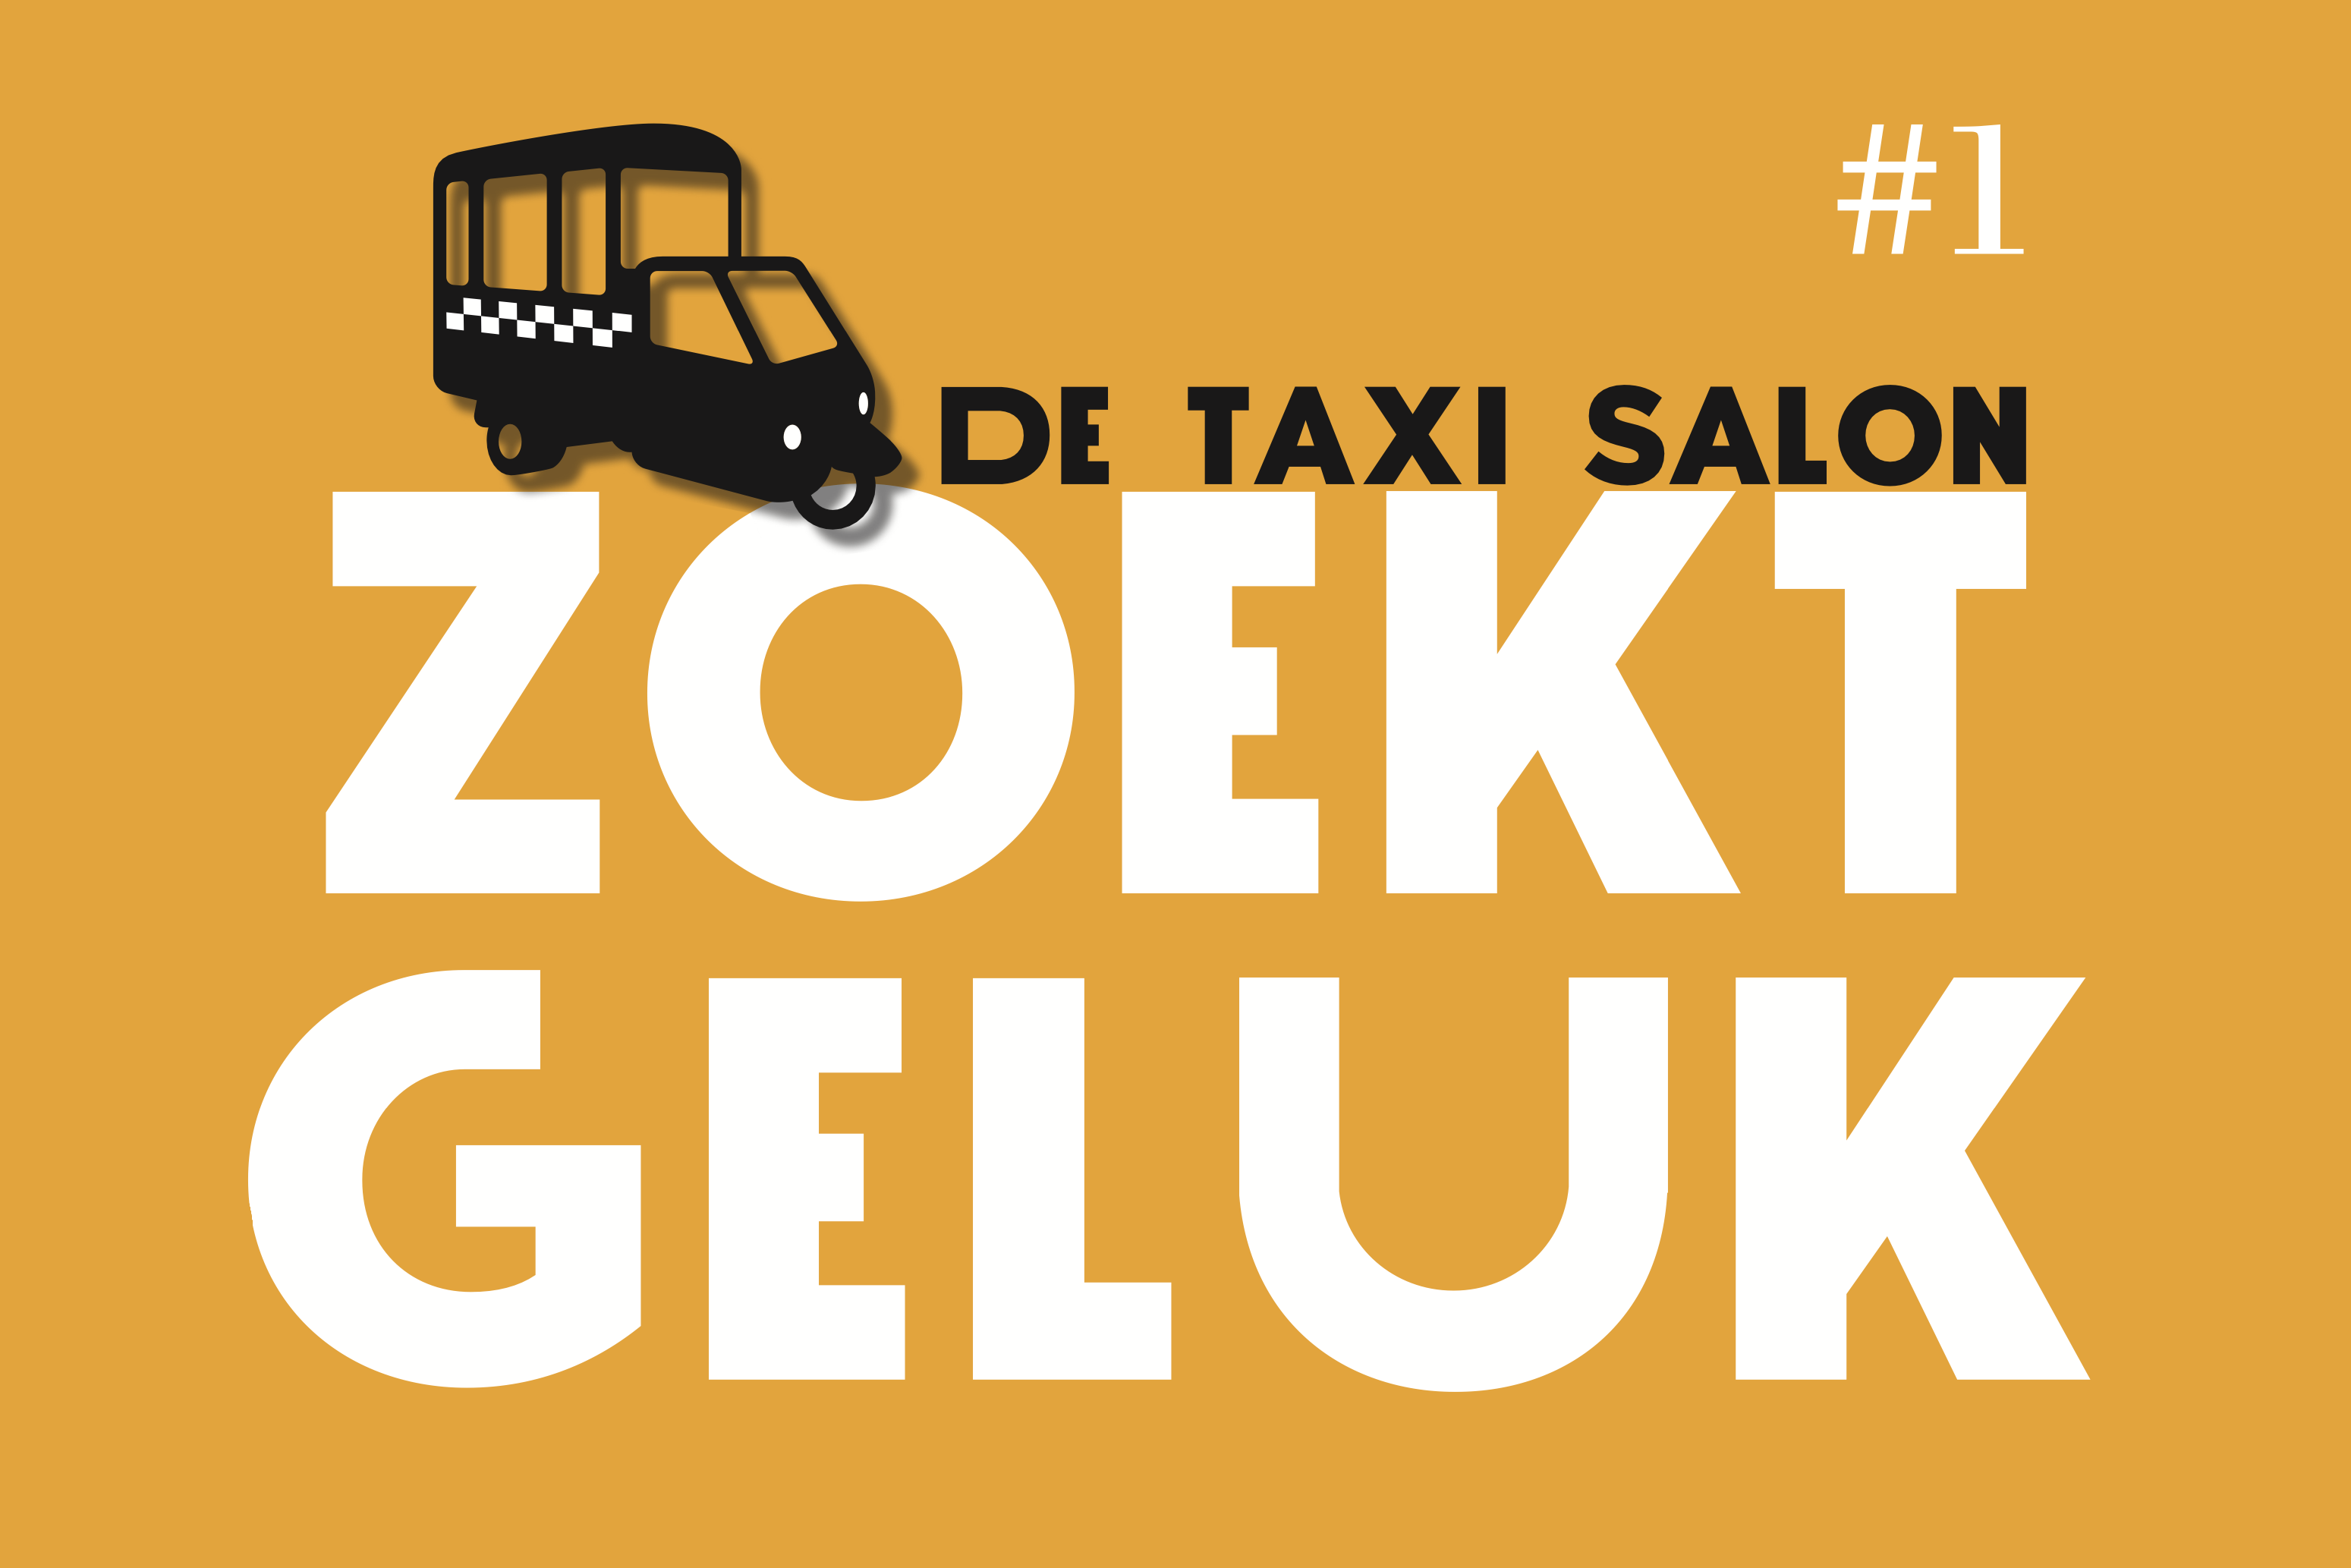 De Taxi Salon #1 – Zoekt Geluk